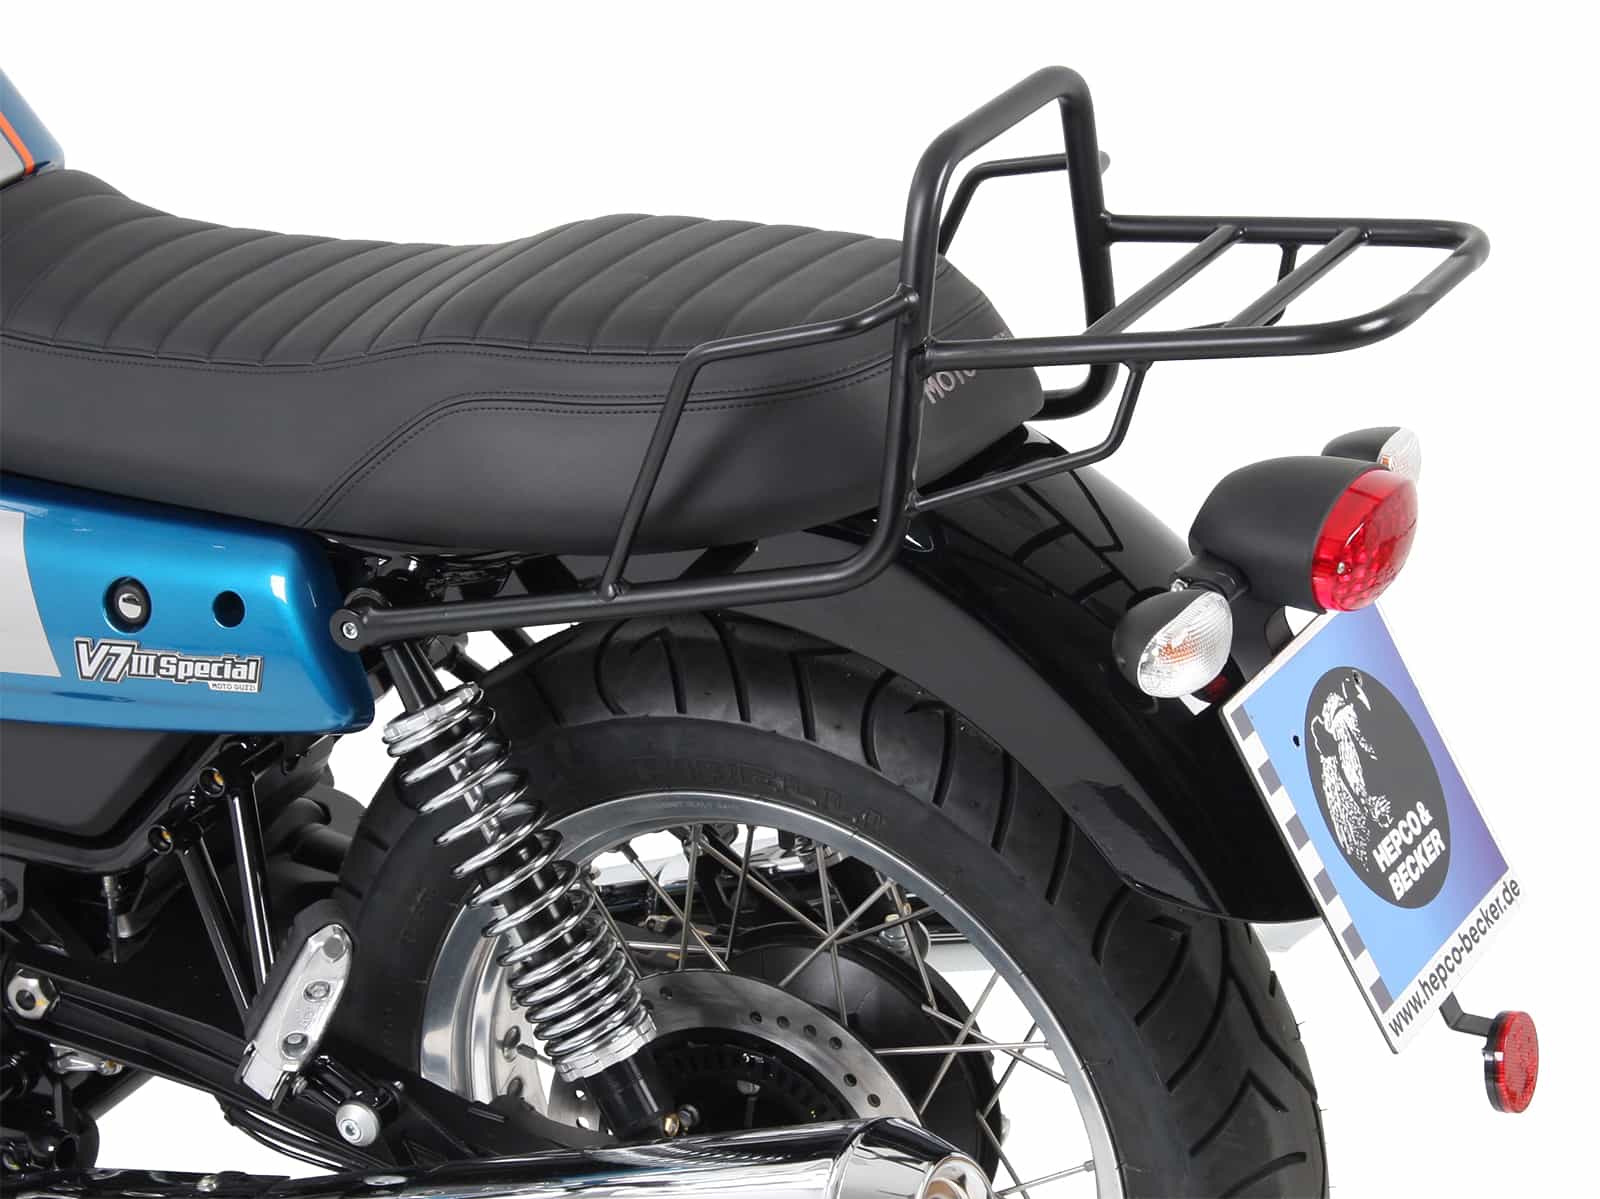 Topcase carrier tube-type black for Moto Guzzi V7 III (Carbon